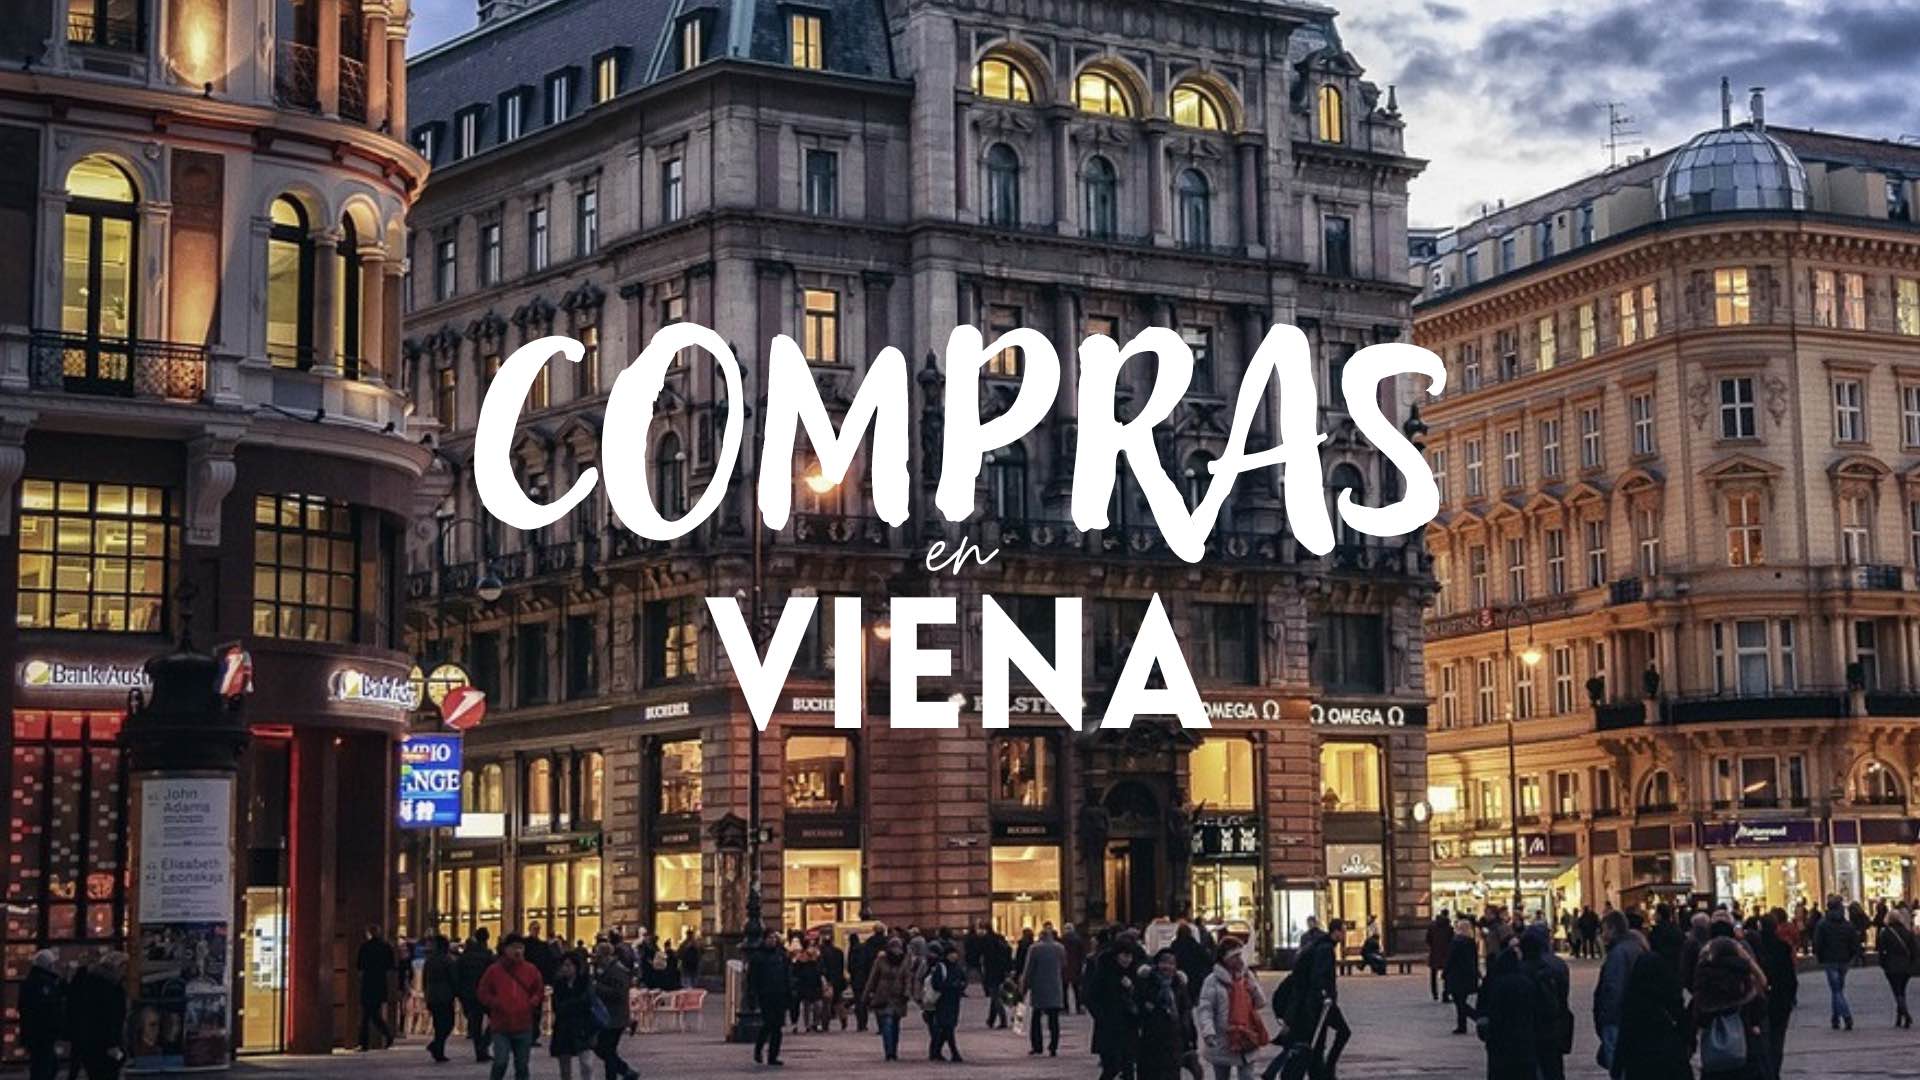 De compras por Viena: mejores zonas y calles